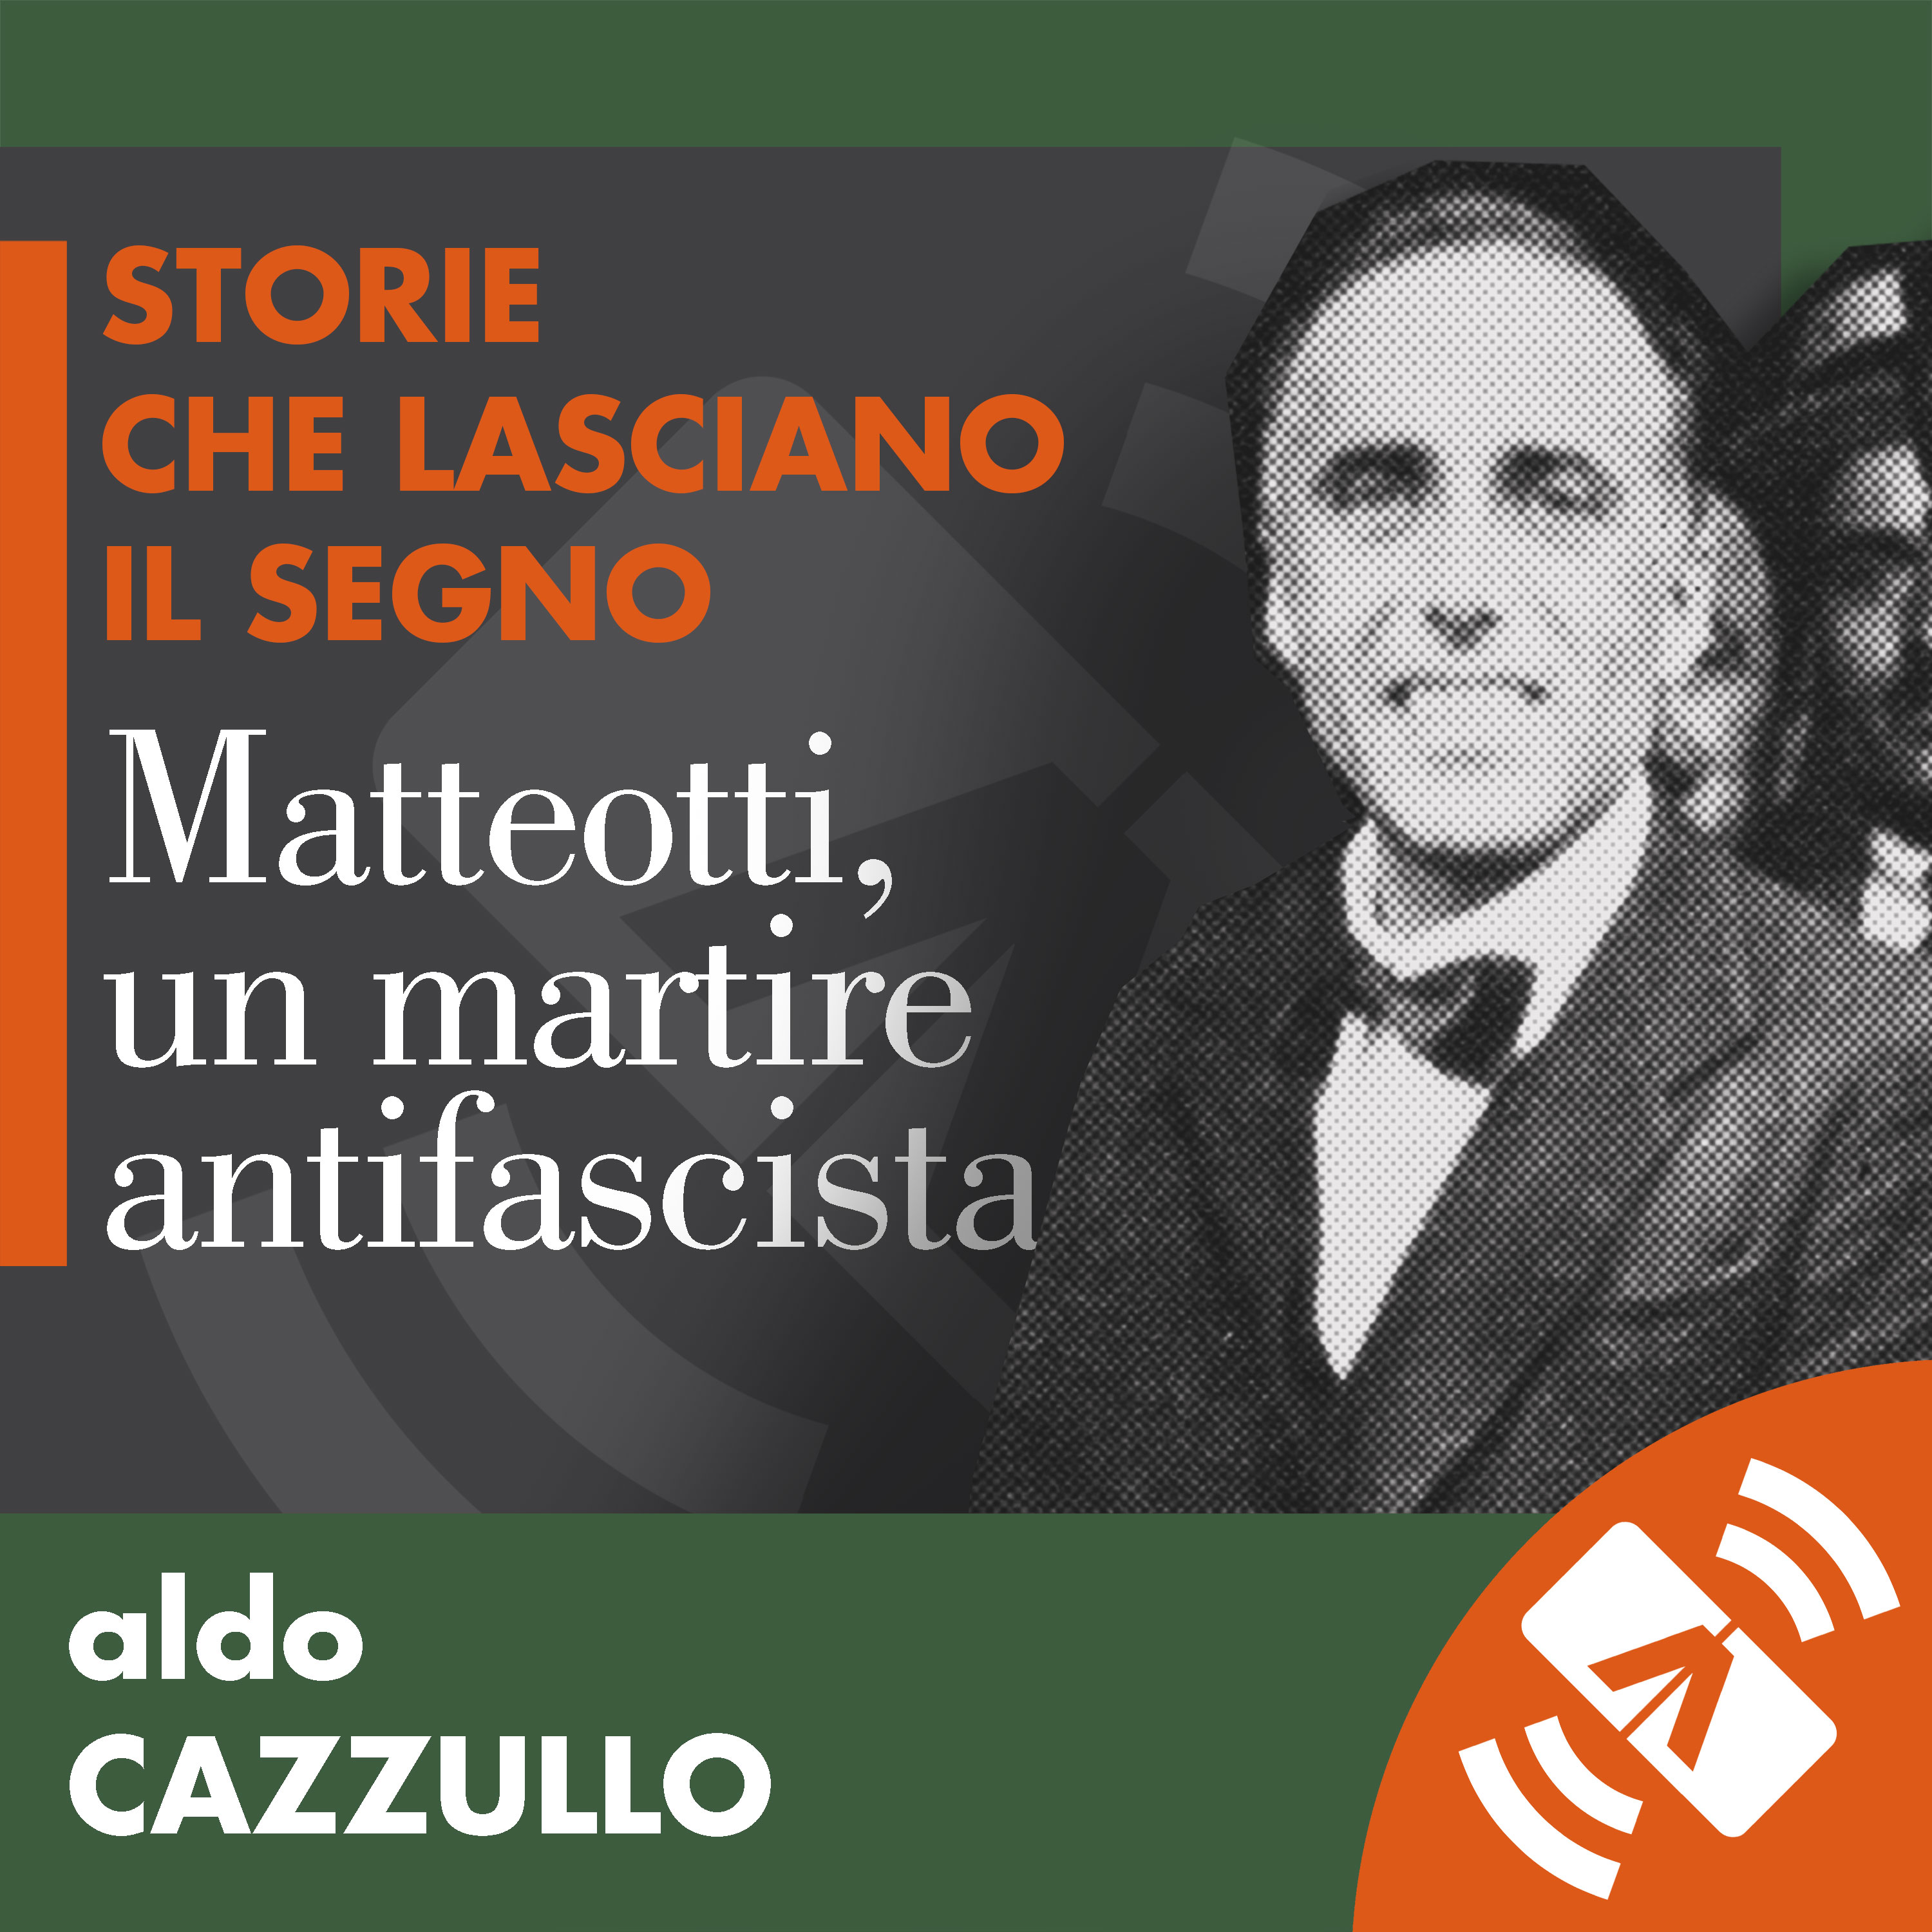 STORIE_MATTEOTTI_cazzullo